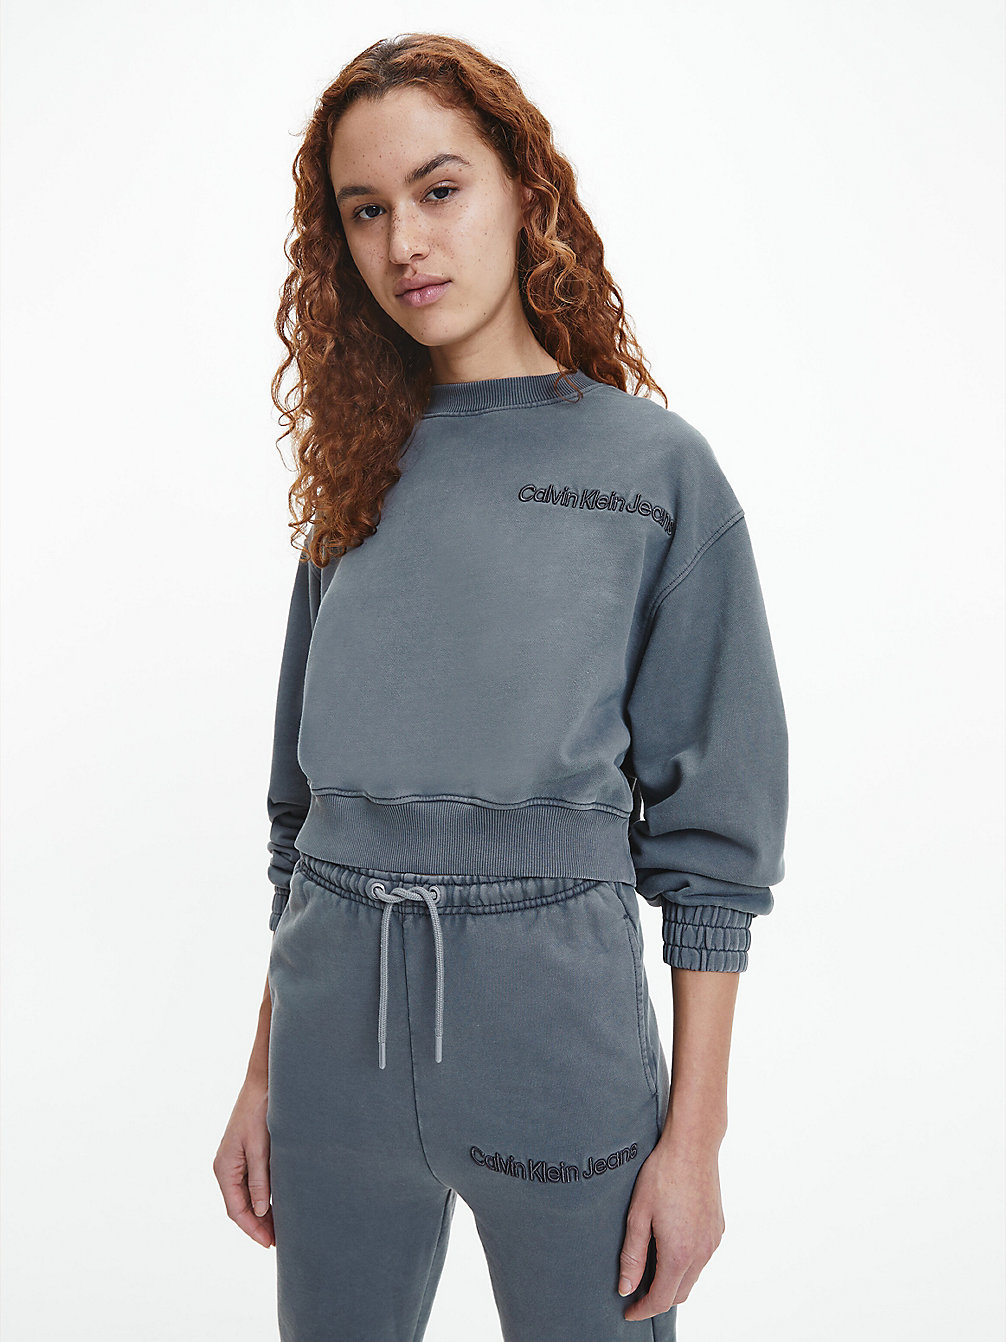 STORM FRONT Oversized Washed Cotton Sweatshirt undefined women Calvin Klein